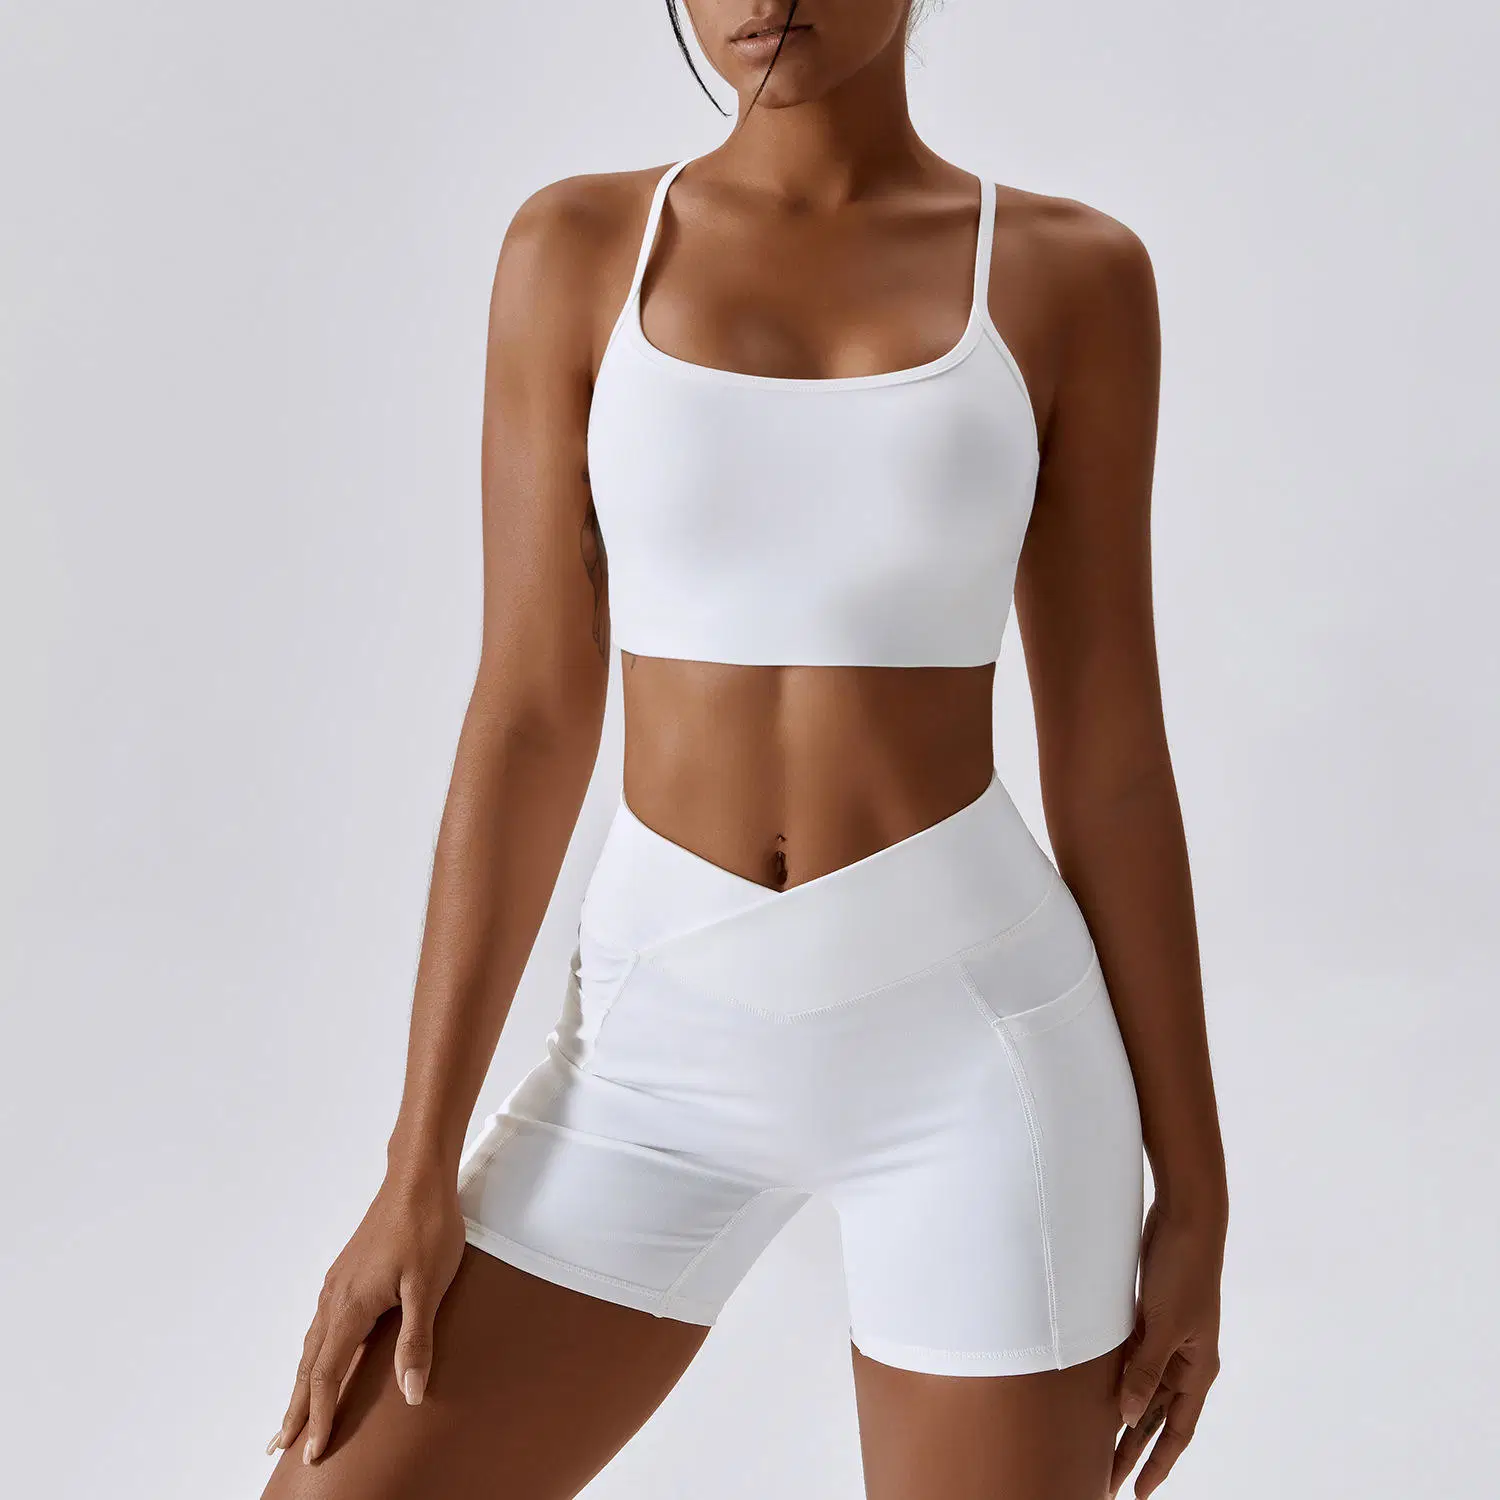 Minghang Garment Sportswear Hersteller Damen Compression Soft Lightweight V Cut Bh-Set Mit Schrubber Rückseite Und Yoga-Shorts